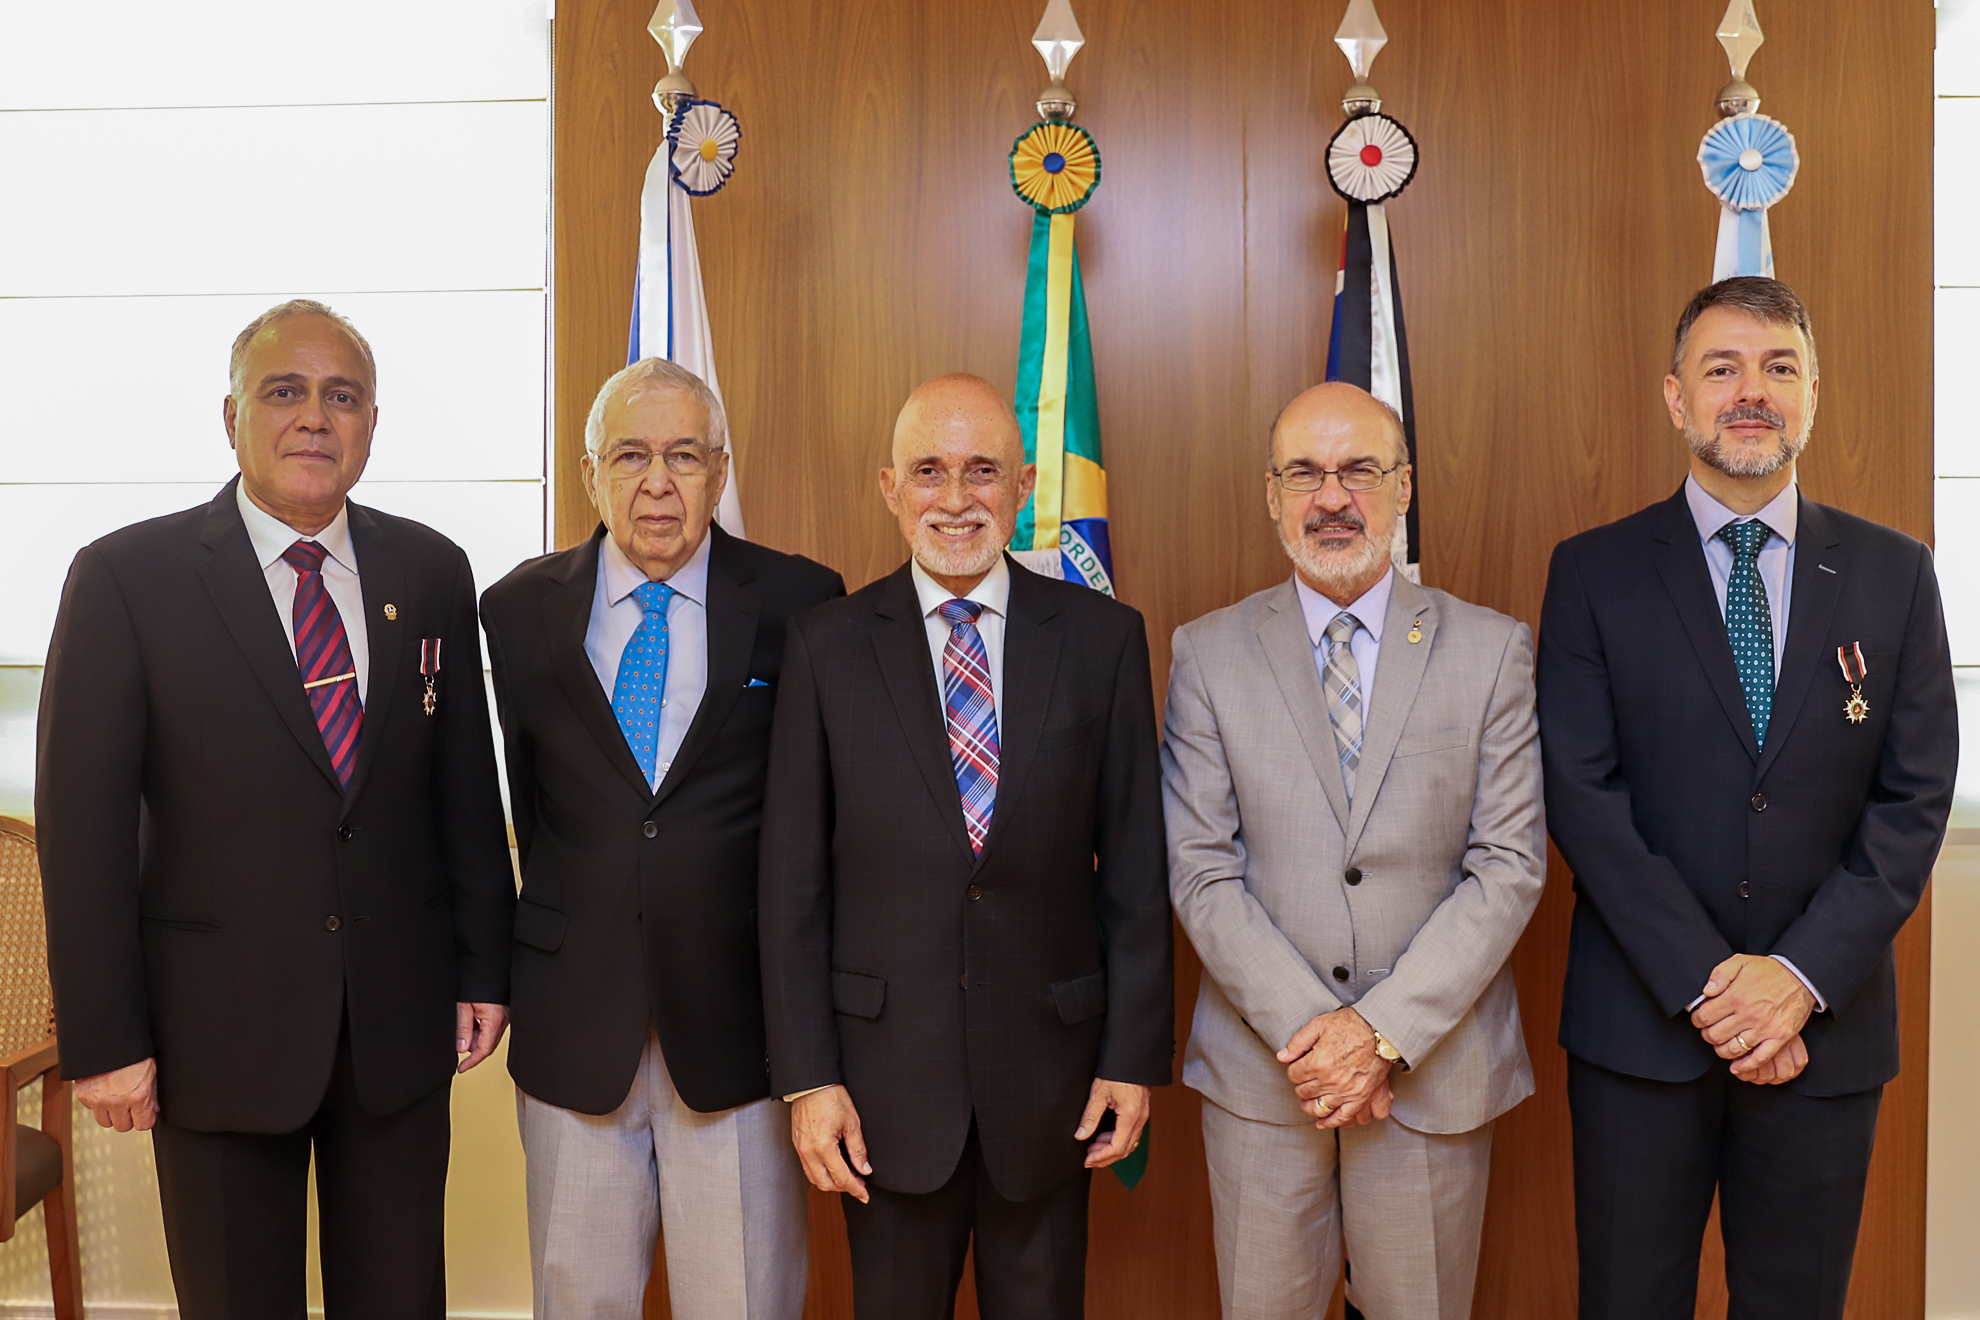 no centro da imagem, o ex-ministro Amir Pazzianotto, Dr. Samuel e Dr. Edmundo, com os dois homenageados, Manoel Messias (à esquerda) e Paulo Henrique (à direita), exibindo a Medalha Ouro em suas respectivas lapelas.